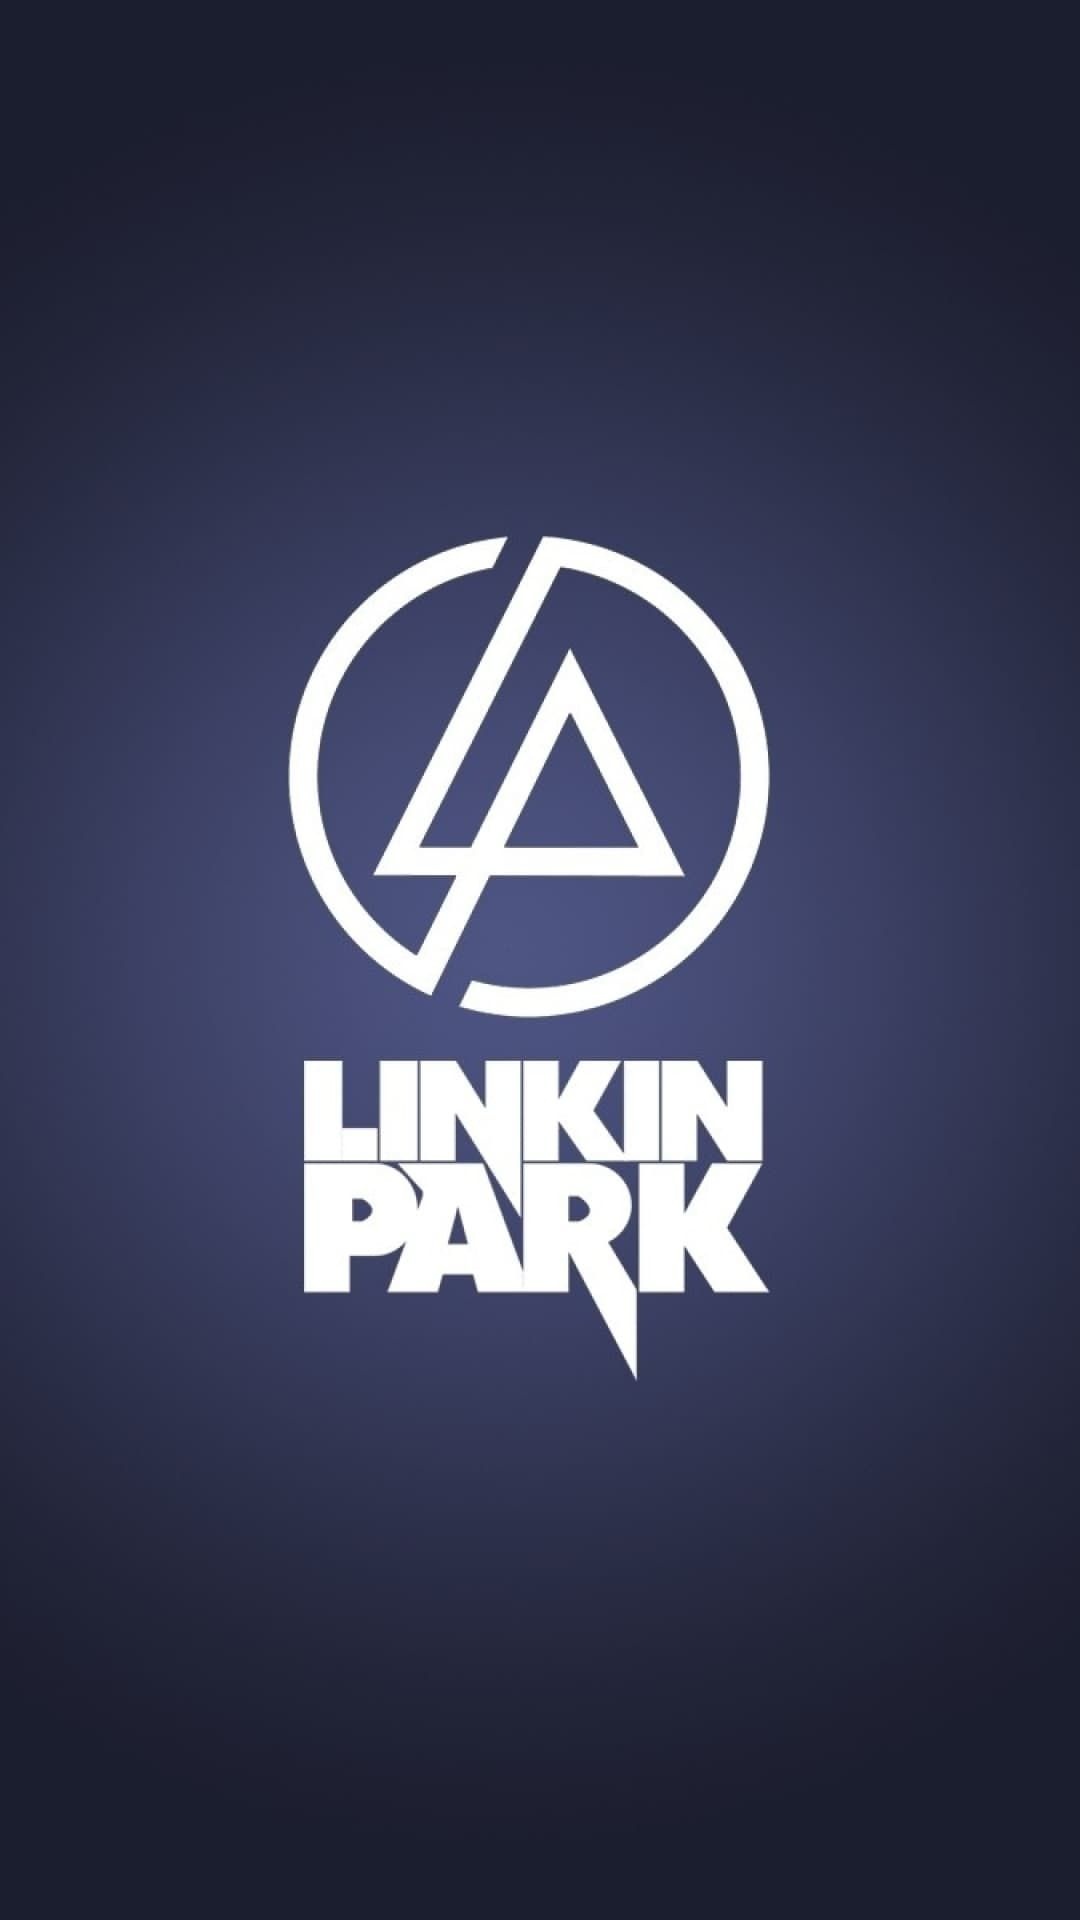 Linkin Park wallpaper, Wallpaper Sun, Abstract design, 1080x1920 Full HD Handy